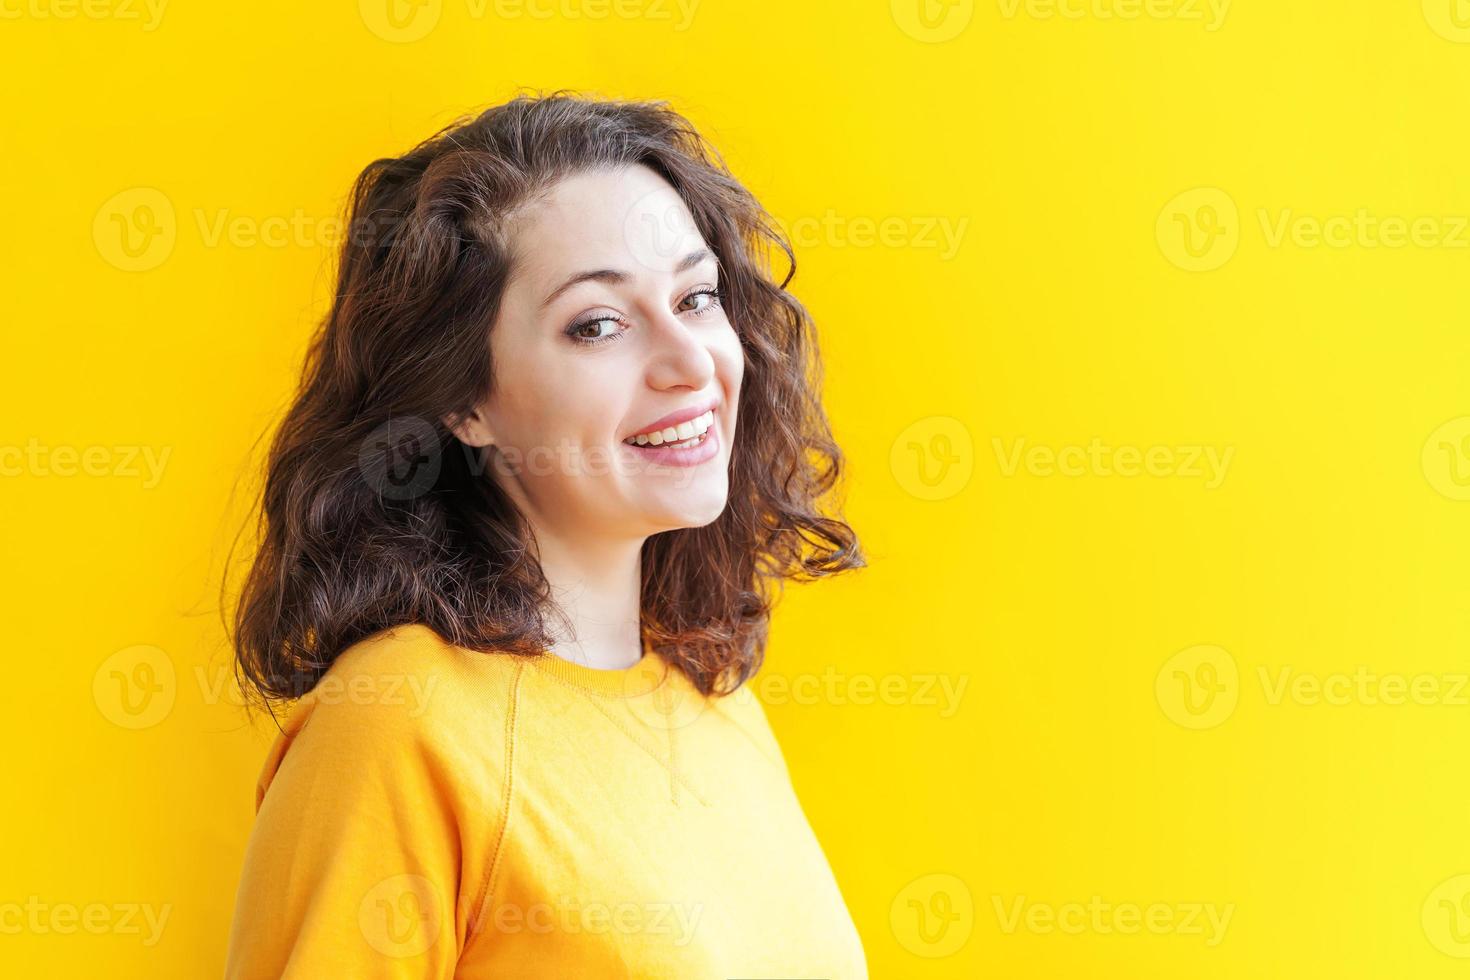 niña feliz sonriendo. retrato de belleza joven feliz mujer morena riendo positiva sobre fondo amarillo aislado. mujer europea. emoción humana positiva expresión facial lenguaje corporal foto